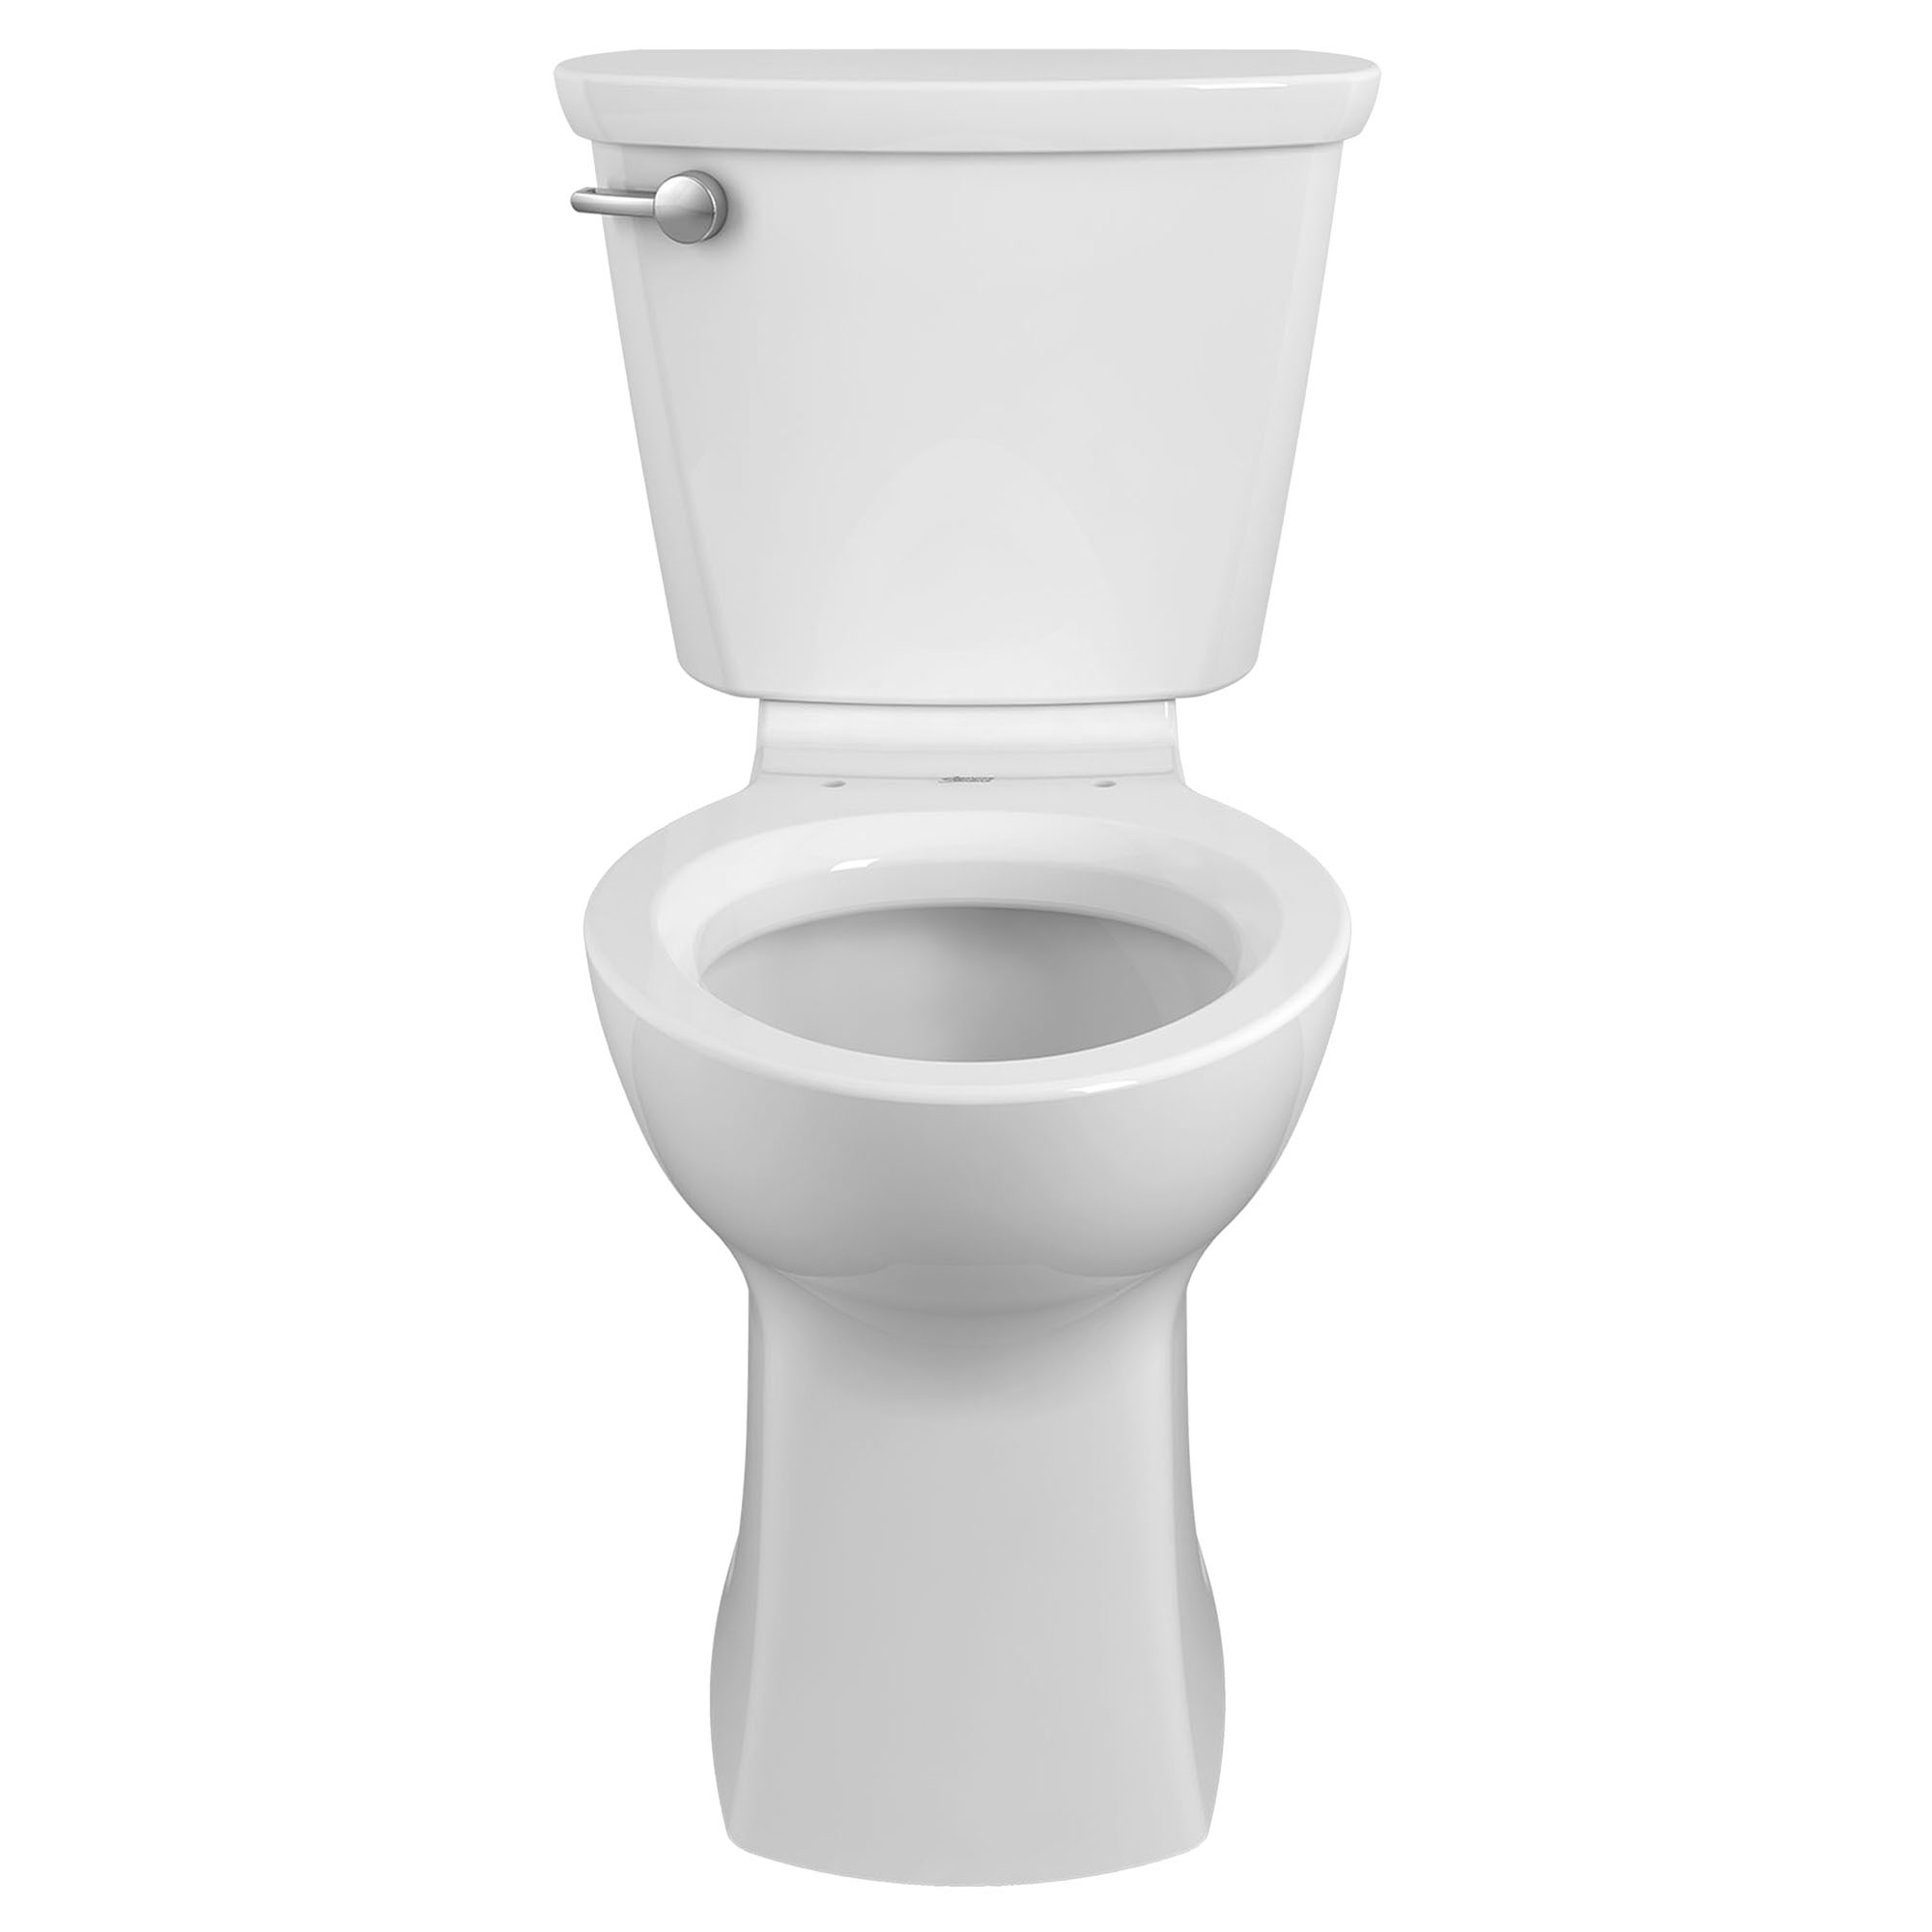 Champion PRO - toilette allongée deux pièces 1,6 gpc/6,0 lpc, à hauteur régulière, levier de déclenchement à droite, sans siège 